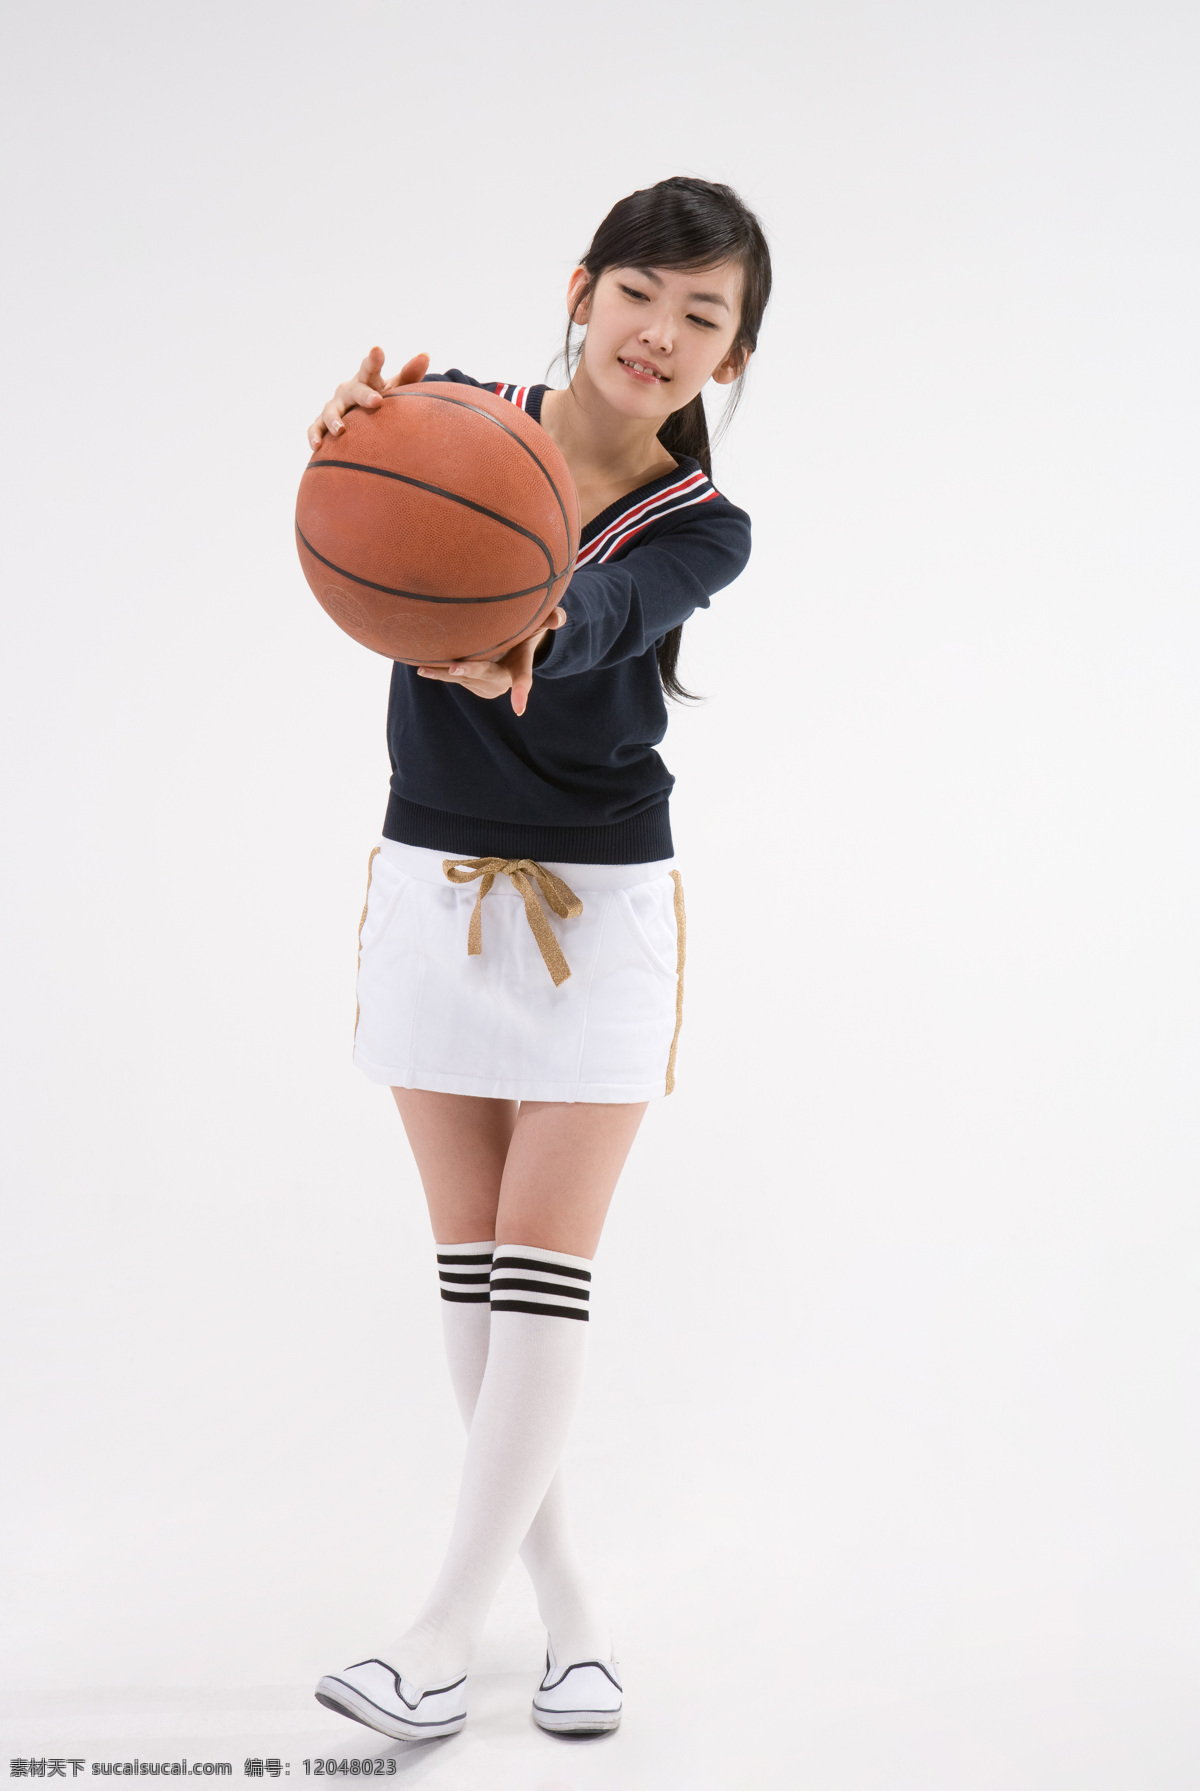 篮球 漂亮 学生 女生 漂亮女孩 服装 运动装 休闲 运动 阳光 打篮球 仰望 表情 微笑 开心 高清图片 生活人物 人物图片